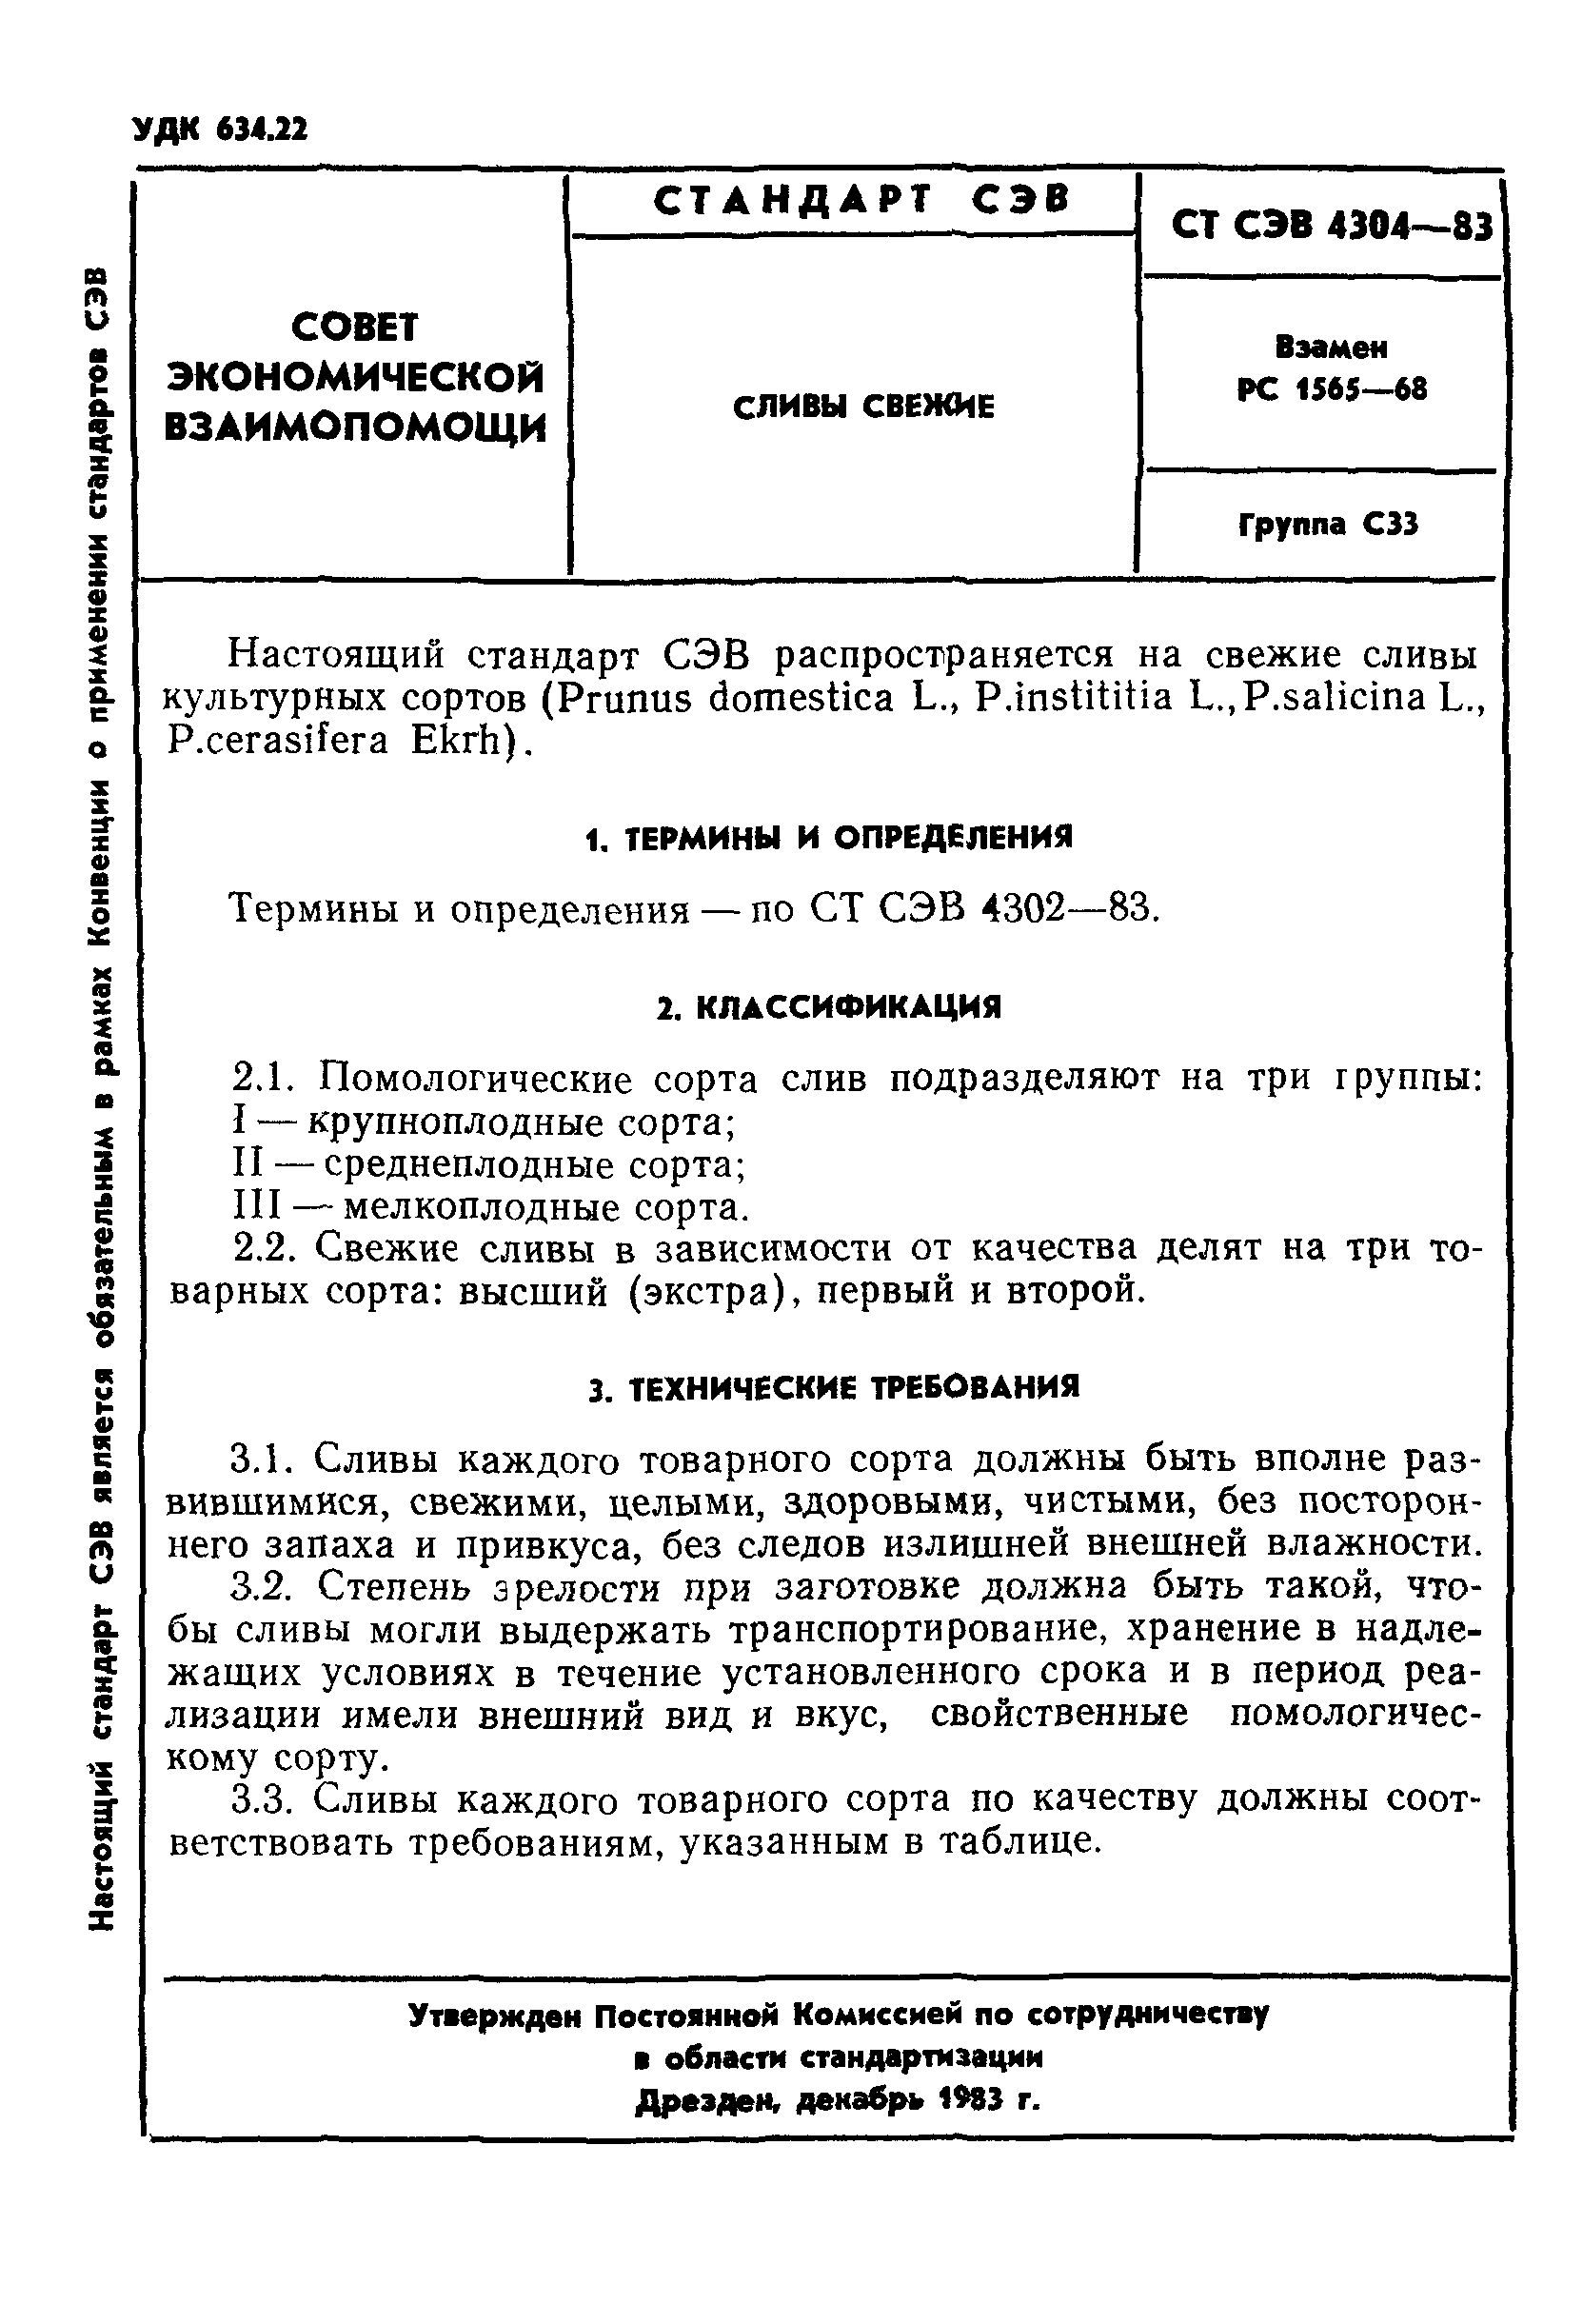 СТ СЭВ 4304-83